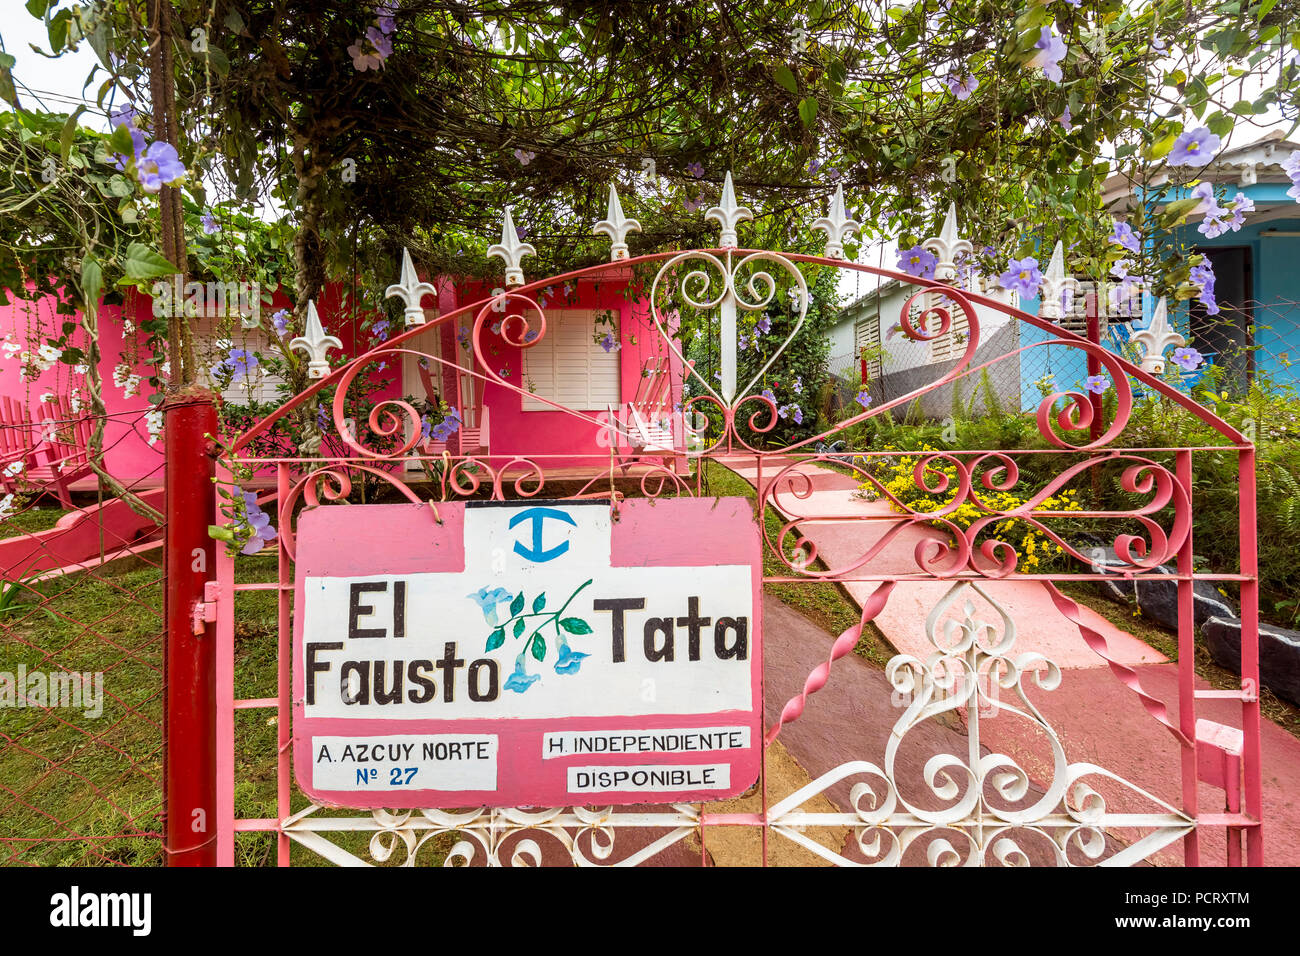 Maison rose avec des escaliers, casa particulier, d'habitation privée à Cuba, El Fausto Tata, Viñales, Cuba, Pinar del Río, Cuba, voyage, île, Grandes Antilles, Banque D'Images